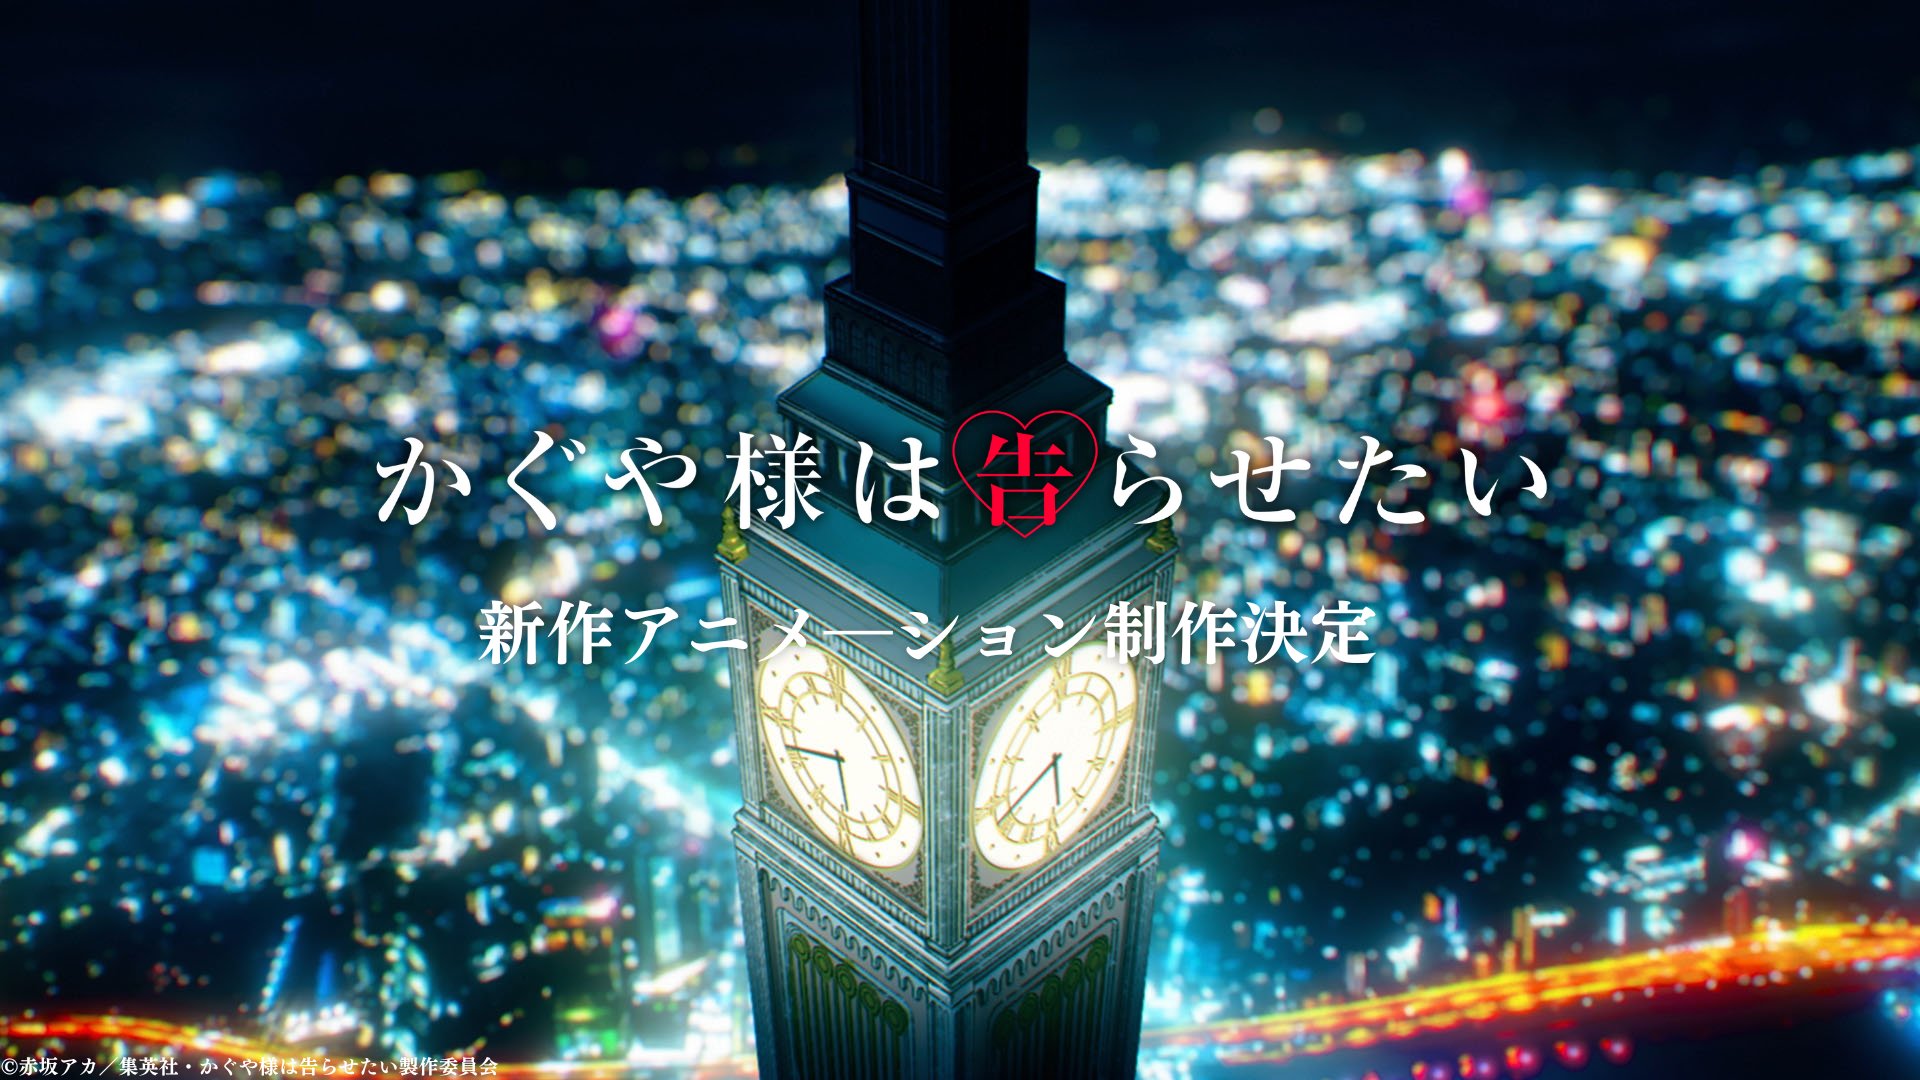 Kaguya-sama: 3ª temporada e OVA são anunciados